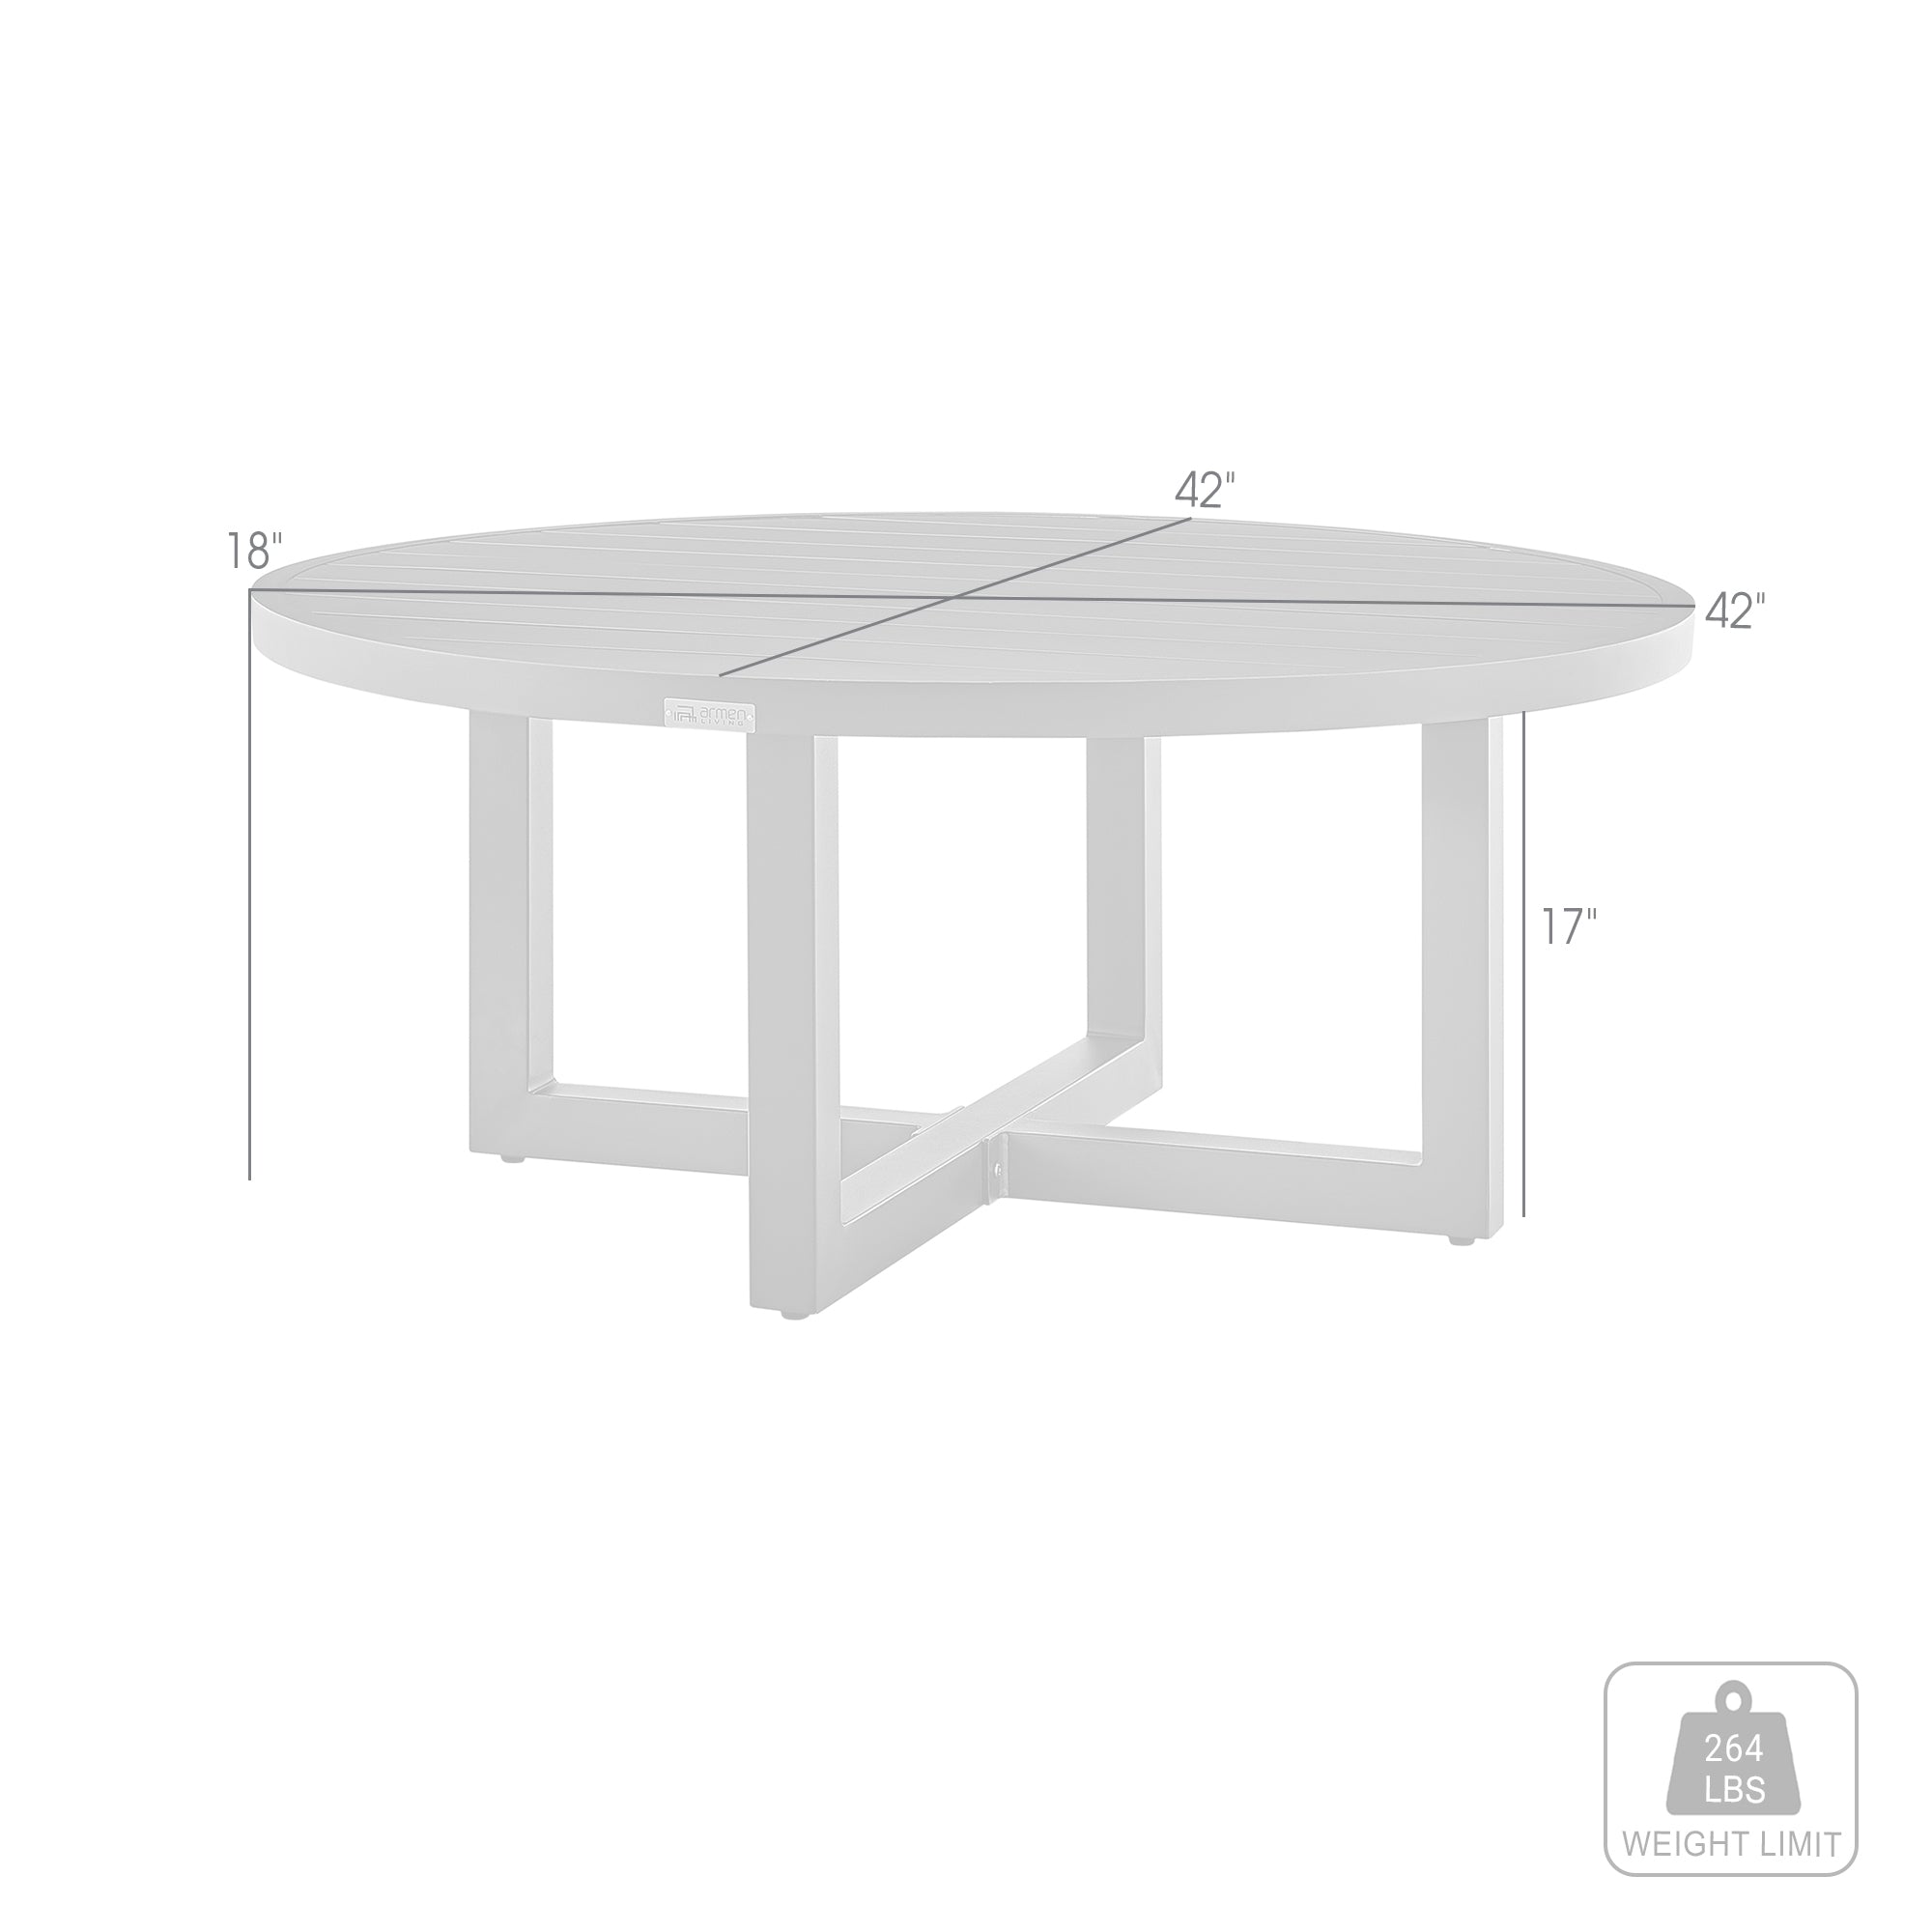 Armen Living - Argiope Outdoor Patio Round Coffee Table in Black Aluminum  - 840254332553